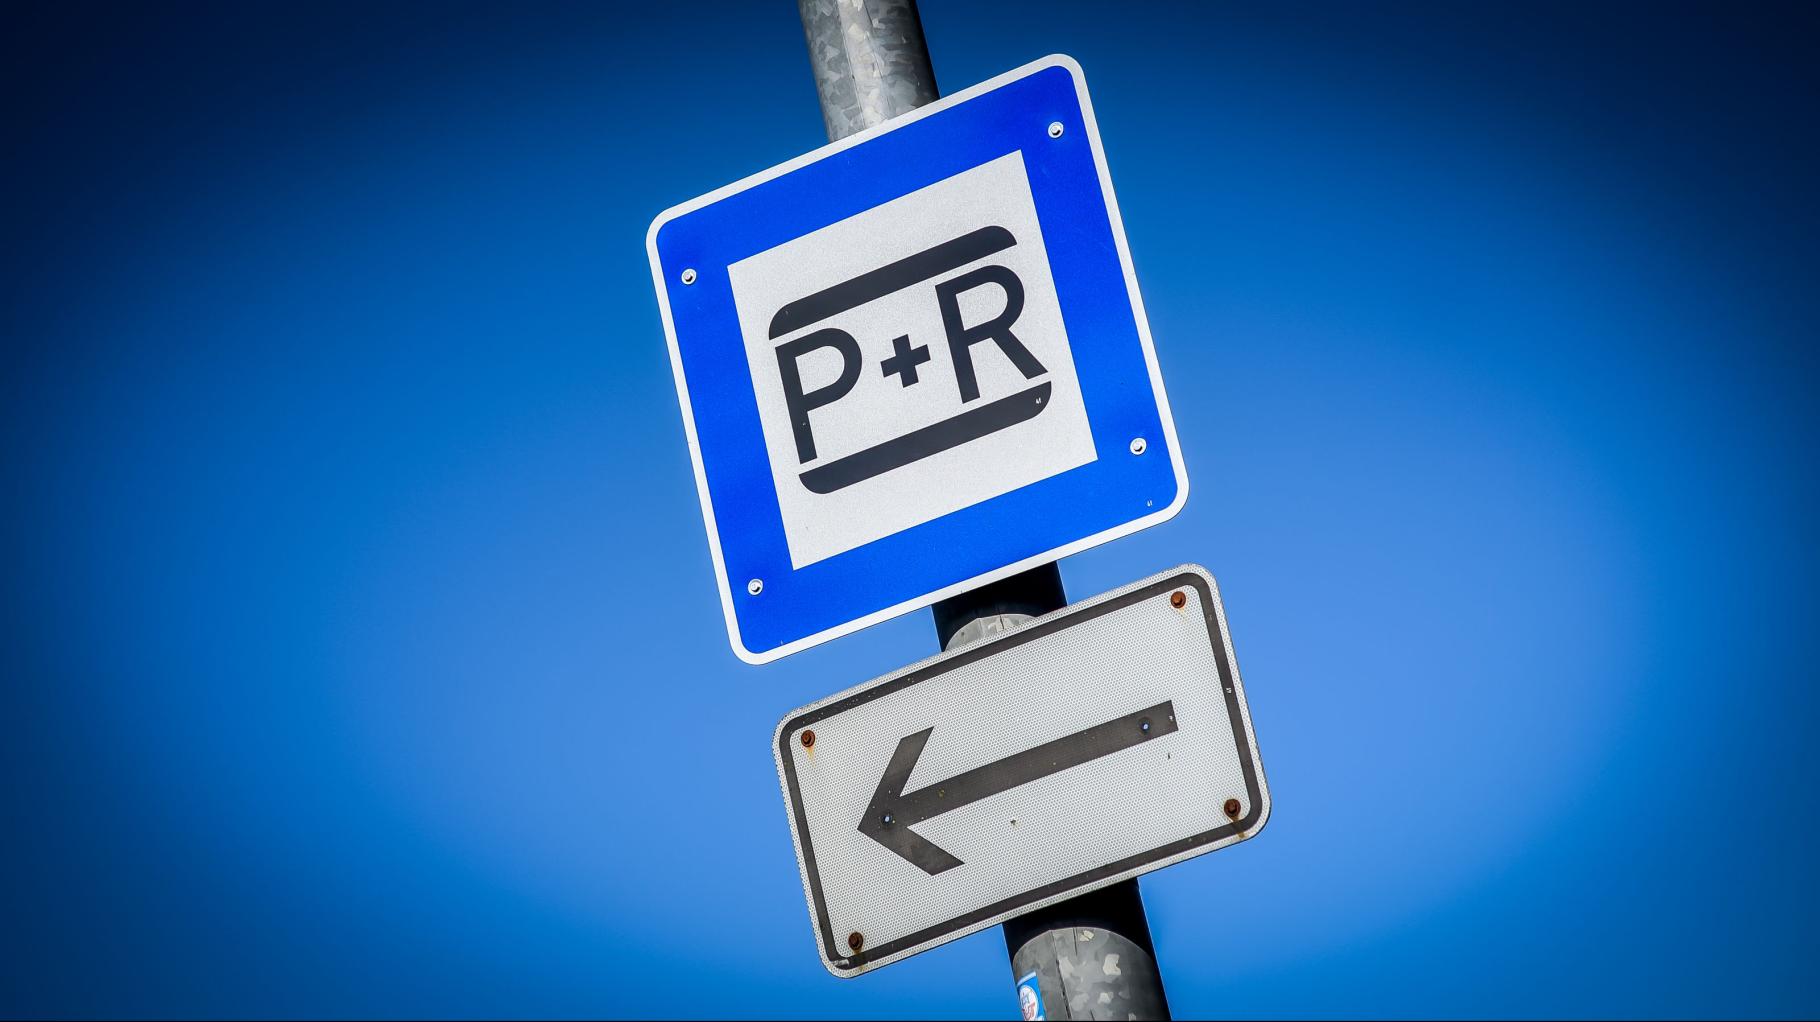 P+R-Plätze in Rostock durchgefallen: Das sagt die Stadt